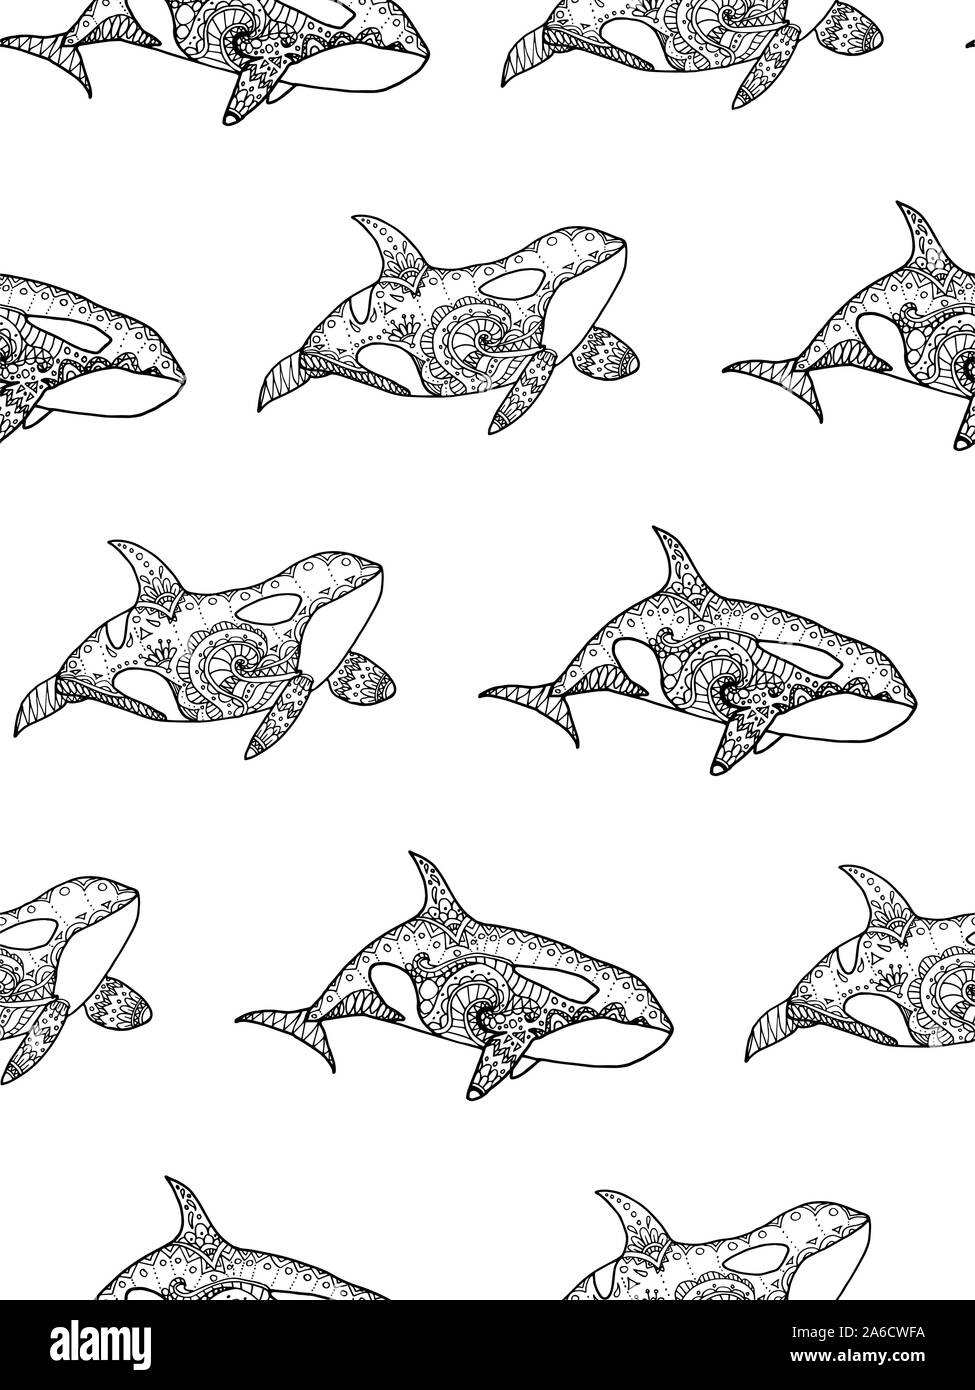 Illustrazione Vettoriale di pattern senza giunture dal disegno a mano modellato balena killer. Pagina di colorazione prenota Illustrazione Vettoriale